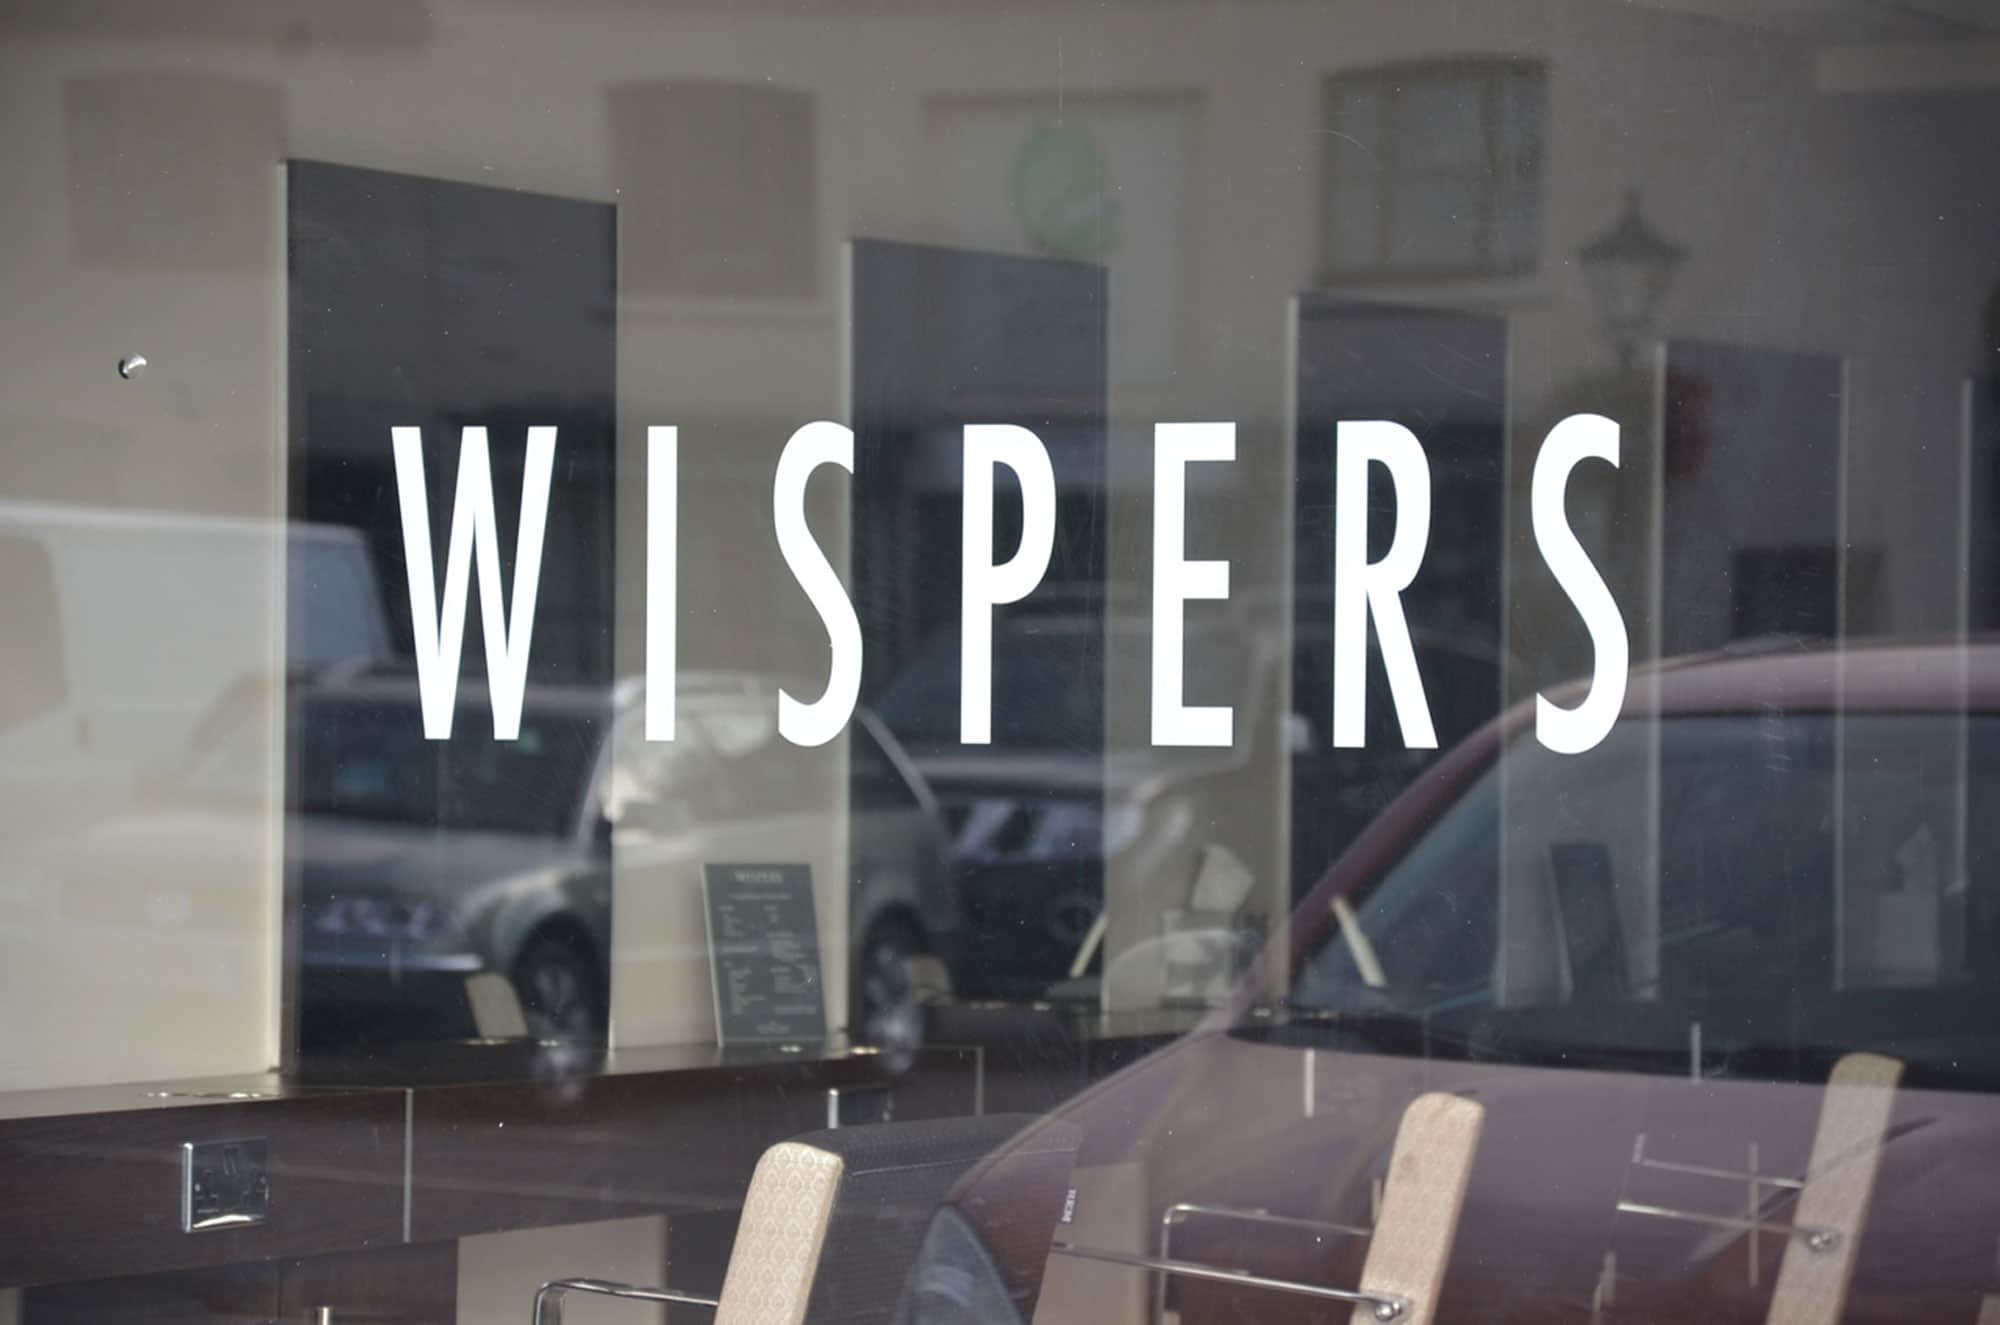 Wispers Ltd